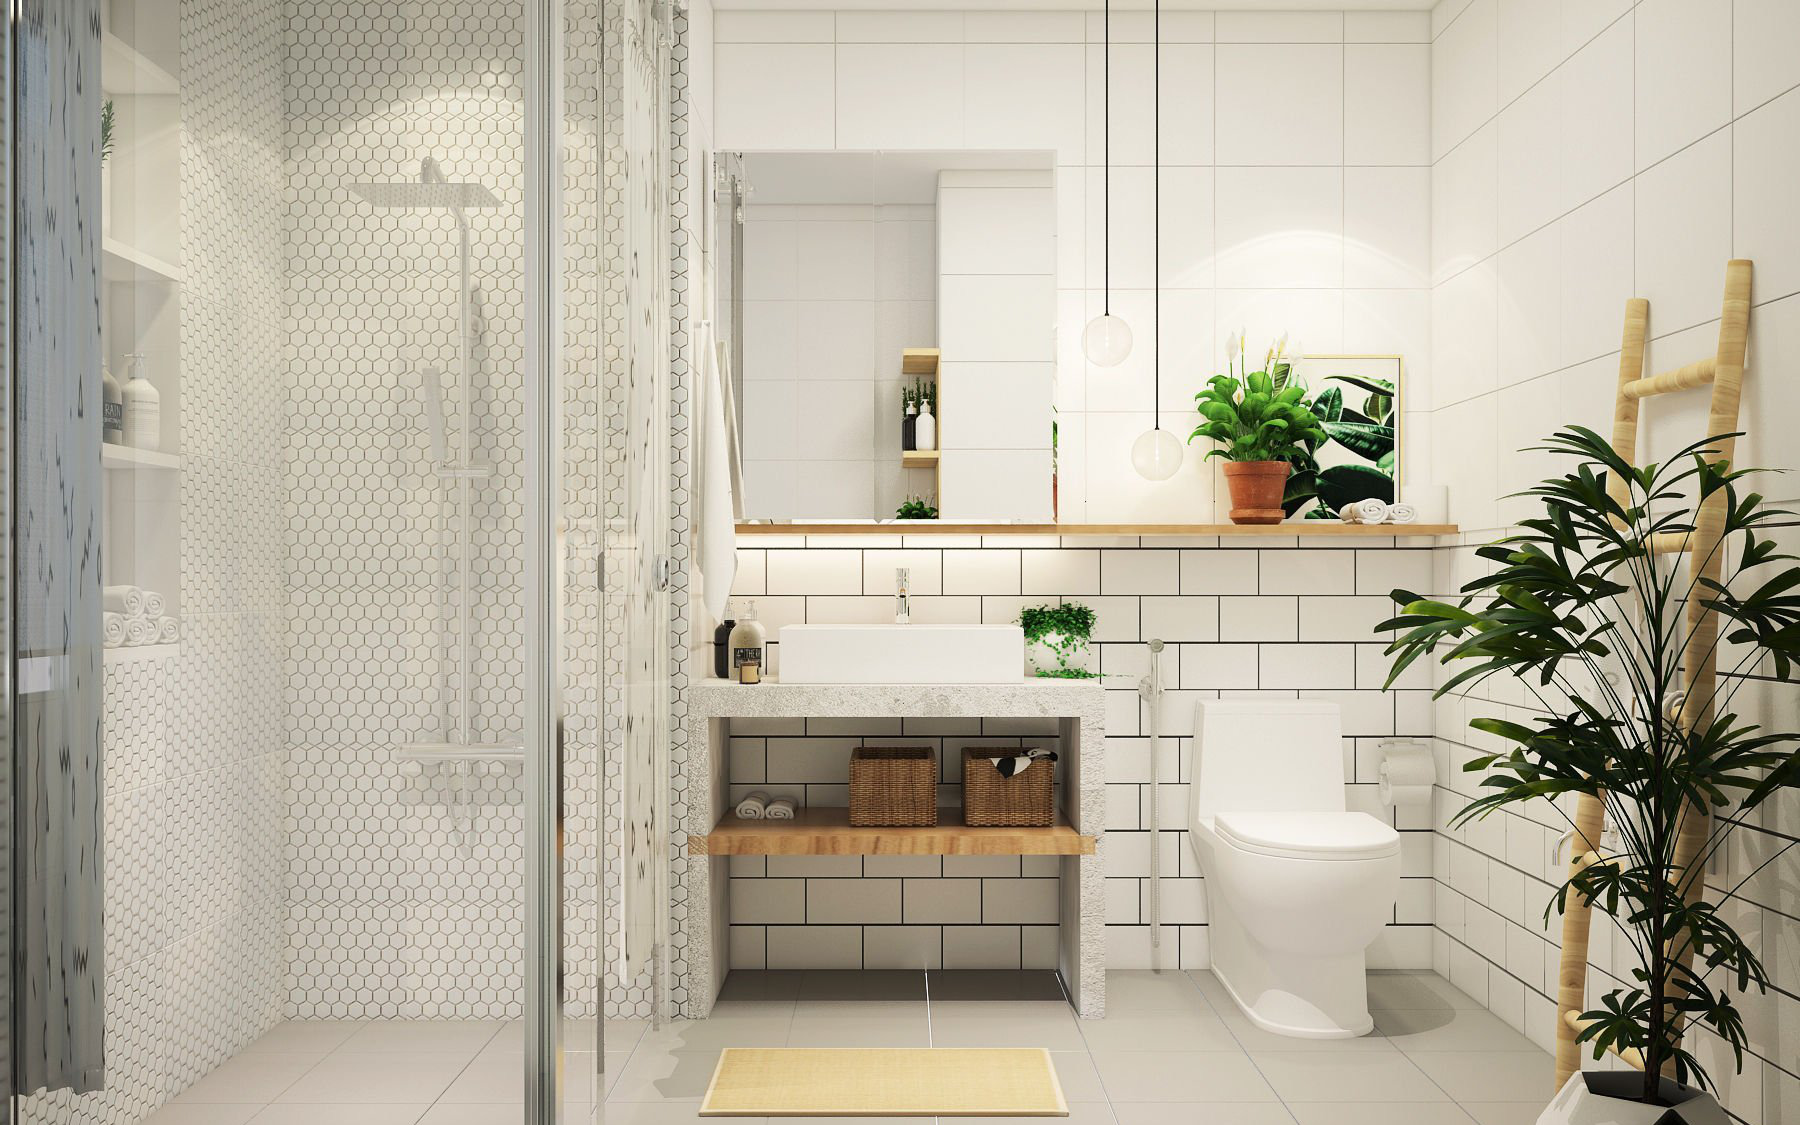 Giải đáp vấn đề thiết kế phòng tắm 10m² lựa chọn nội thất gì, chi phí bao nhiêu thì phù hợp